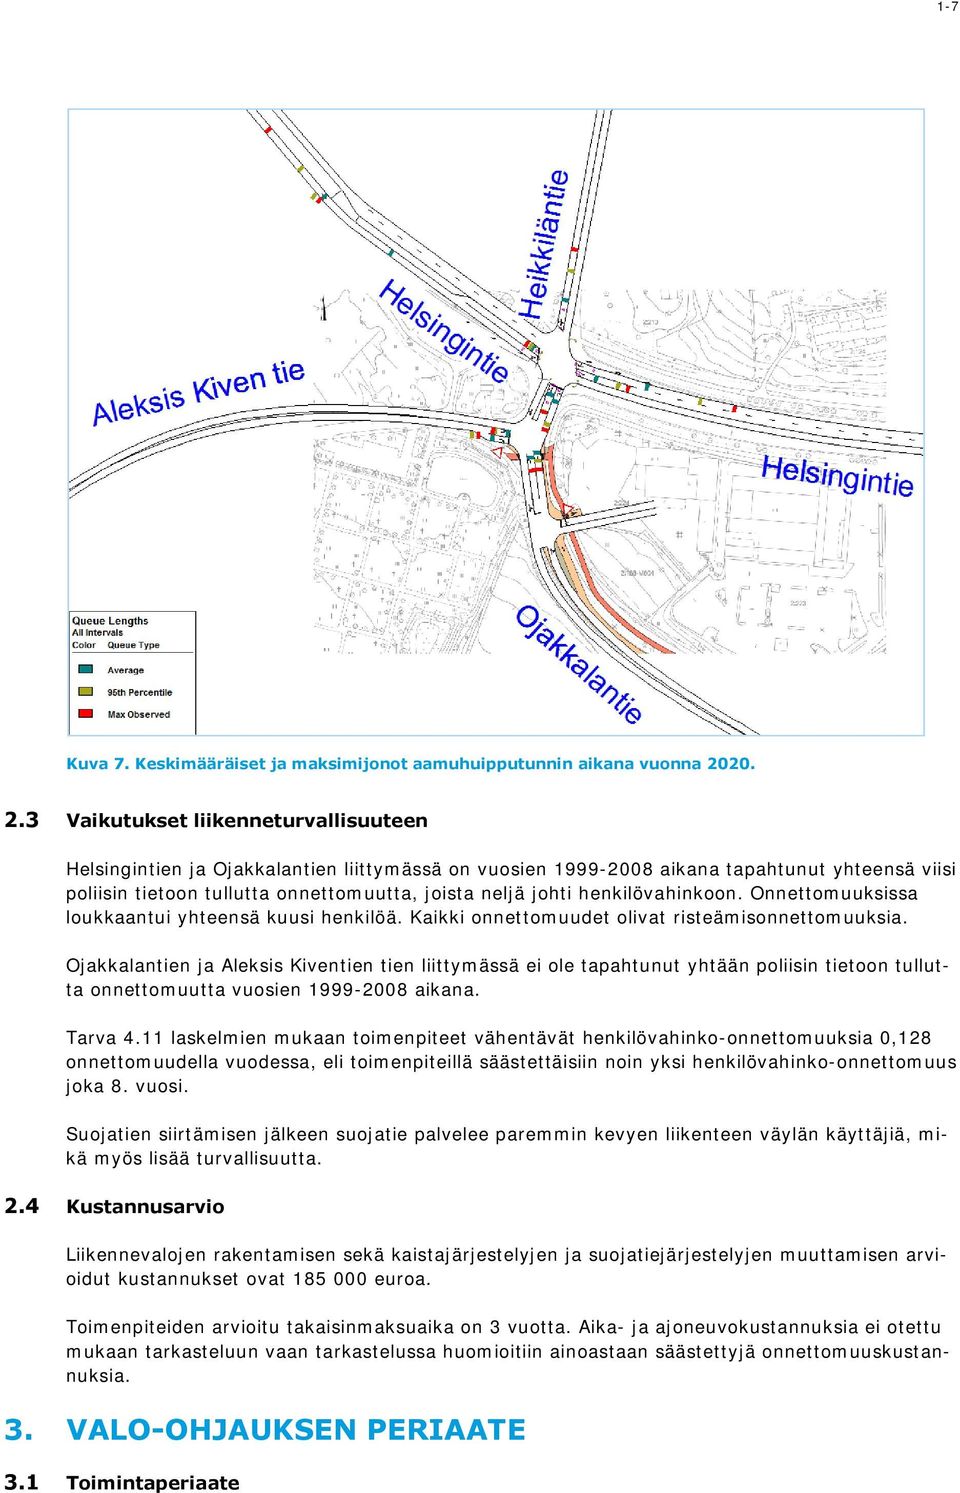 3 Vaikutukset liikenneturvallisuuteen Helsingintien ja Ojakkalantien liittymässä on vuosien 1999-2008 aikana tapahtunut yhteensä viisi poliisin tietoon tullutta onnettomuutta, joista neljä johti